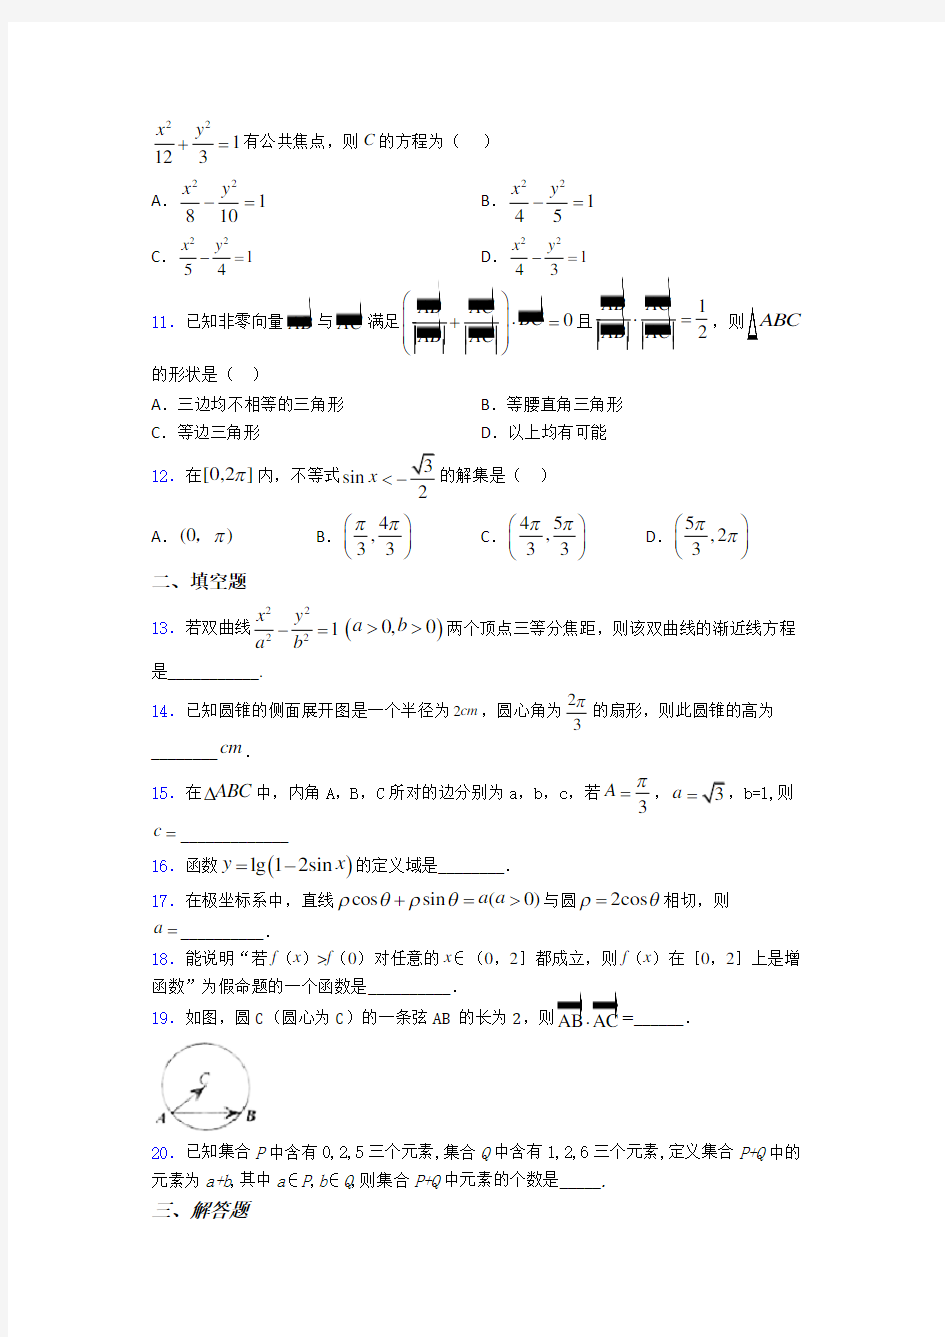 【必考题】高考数学试题(带答案)